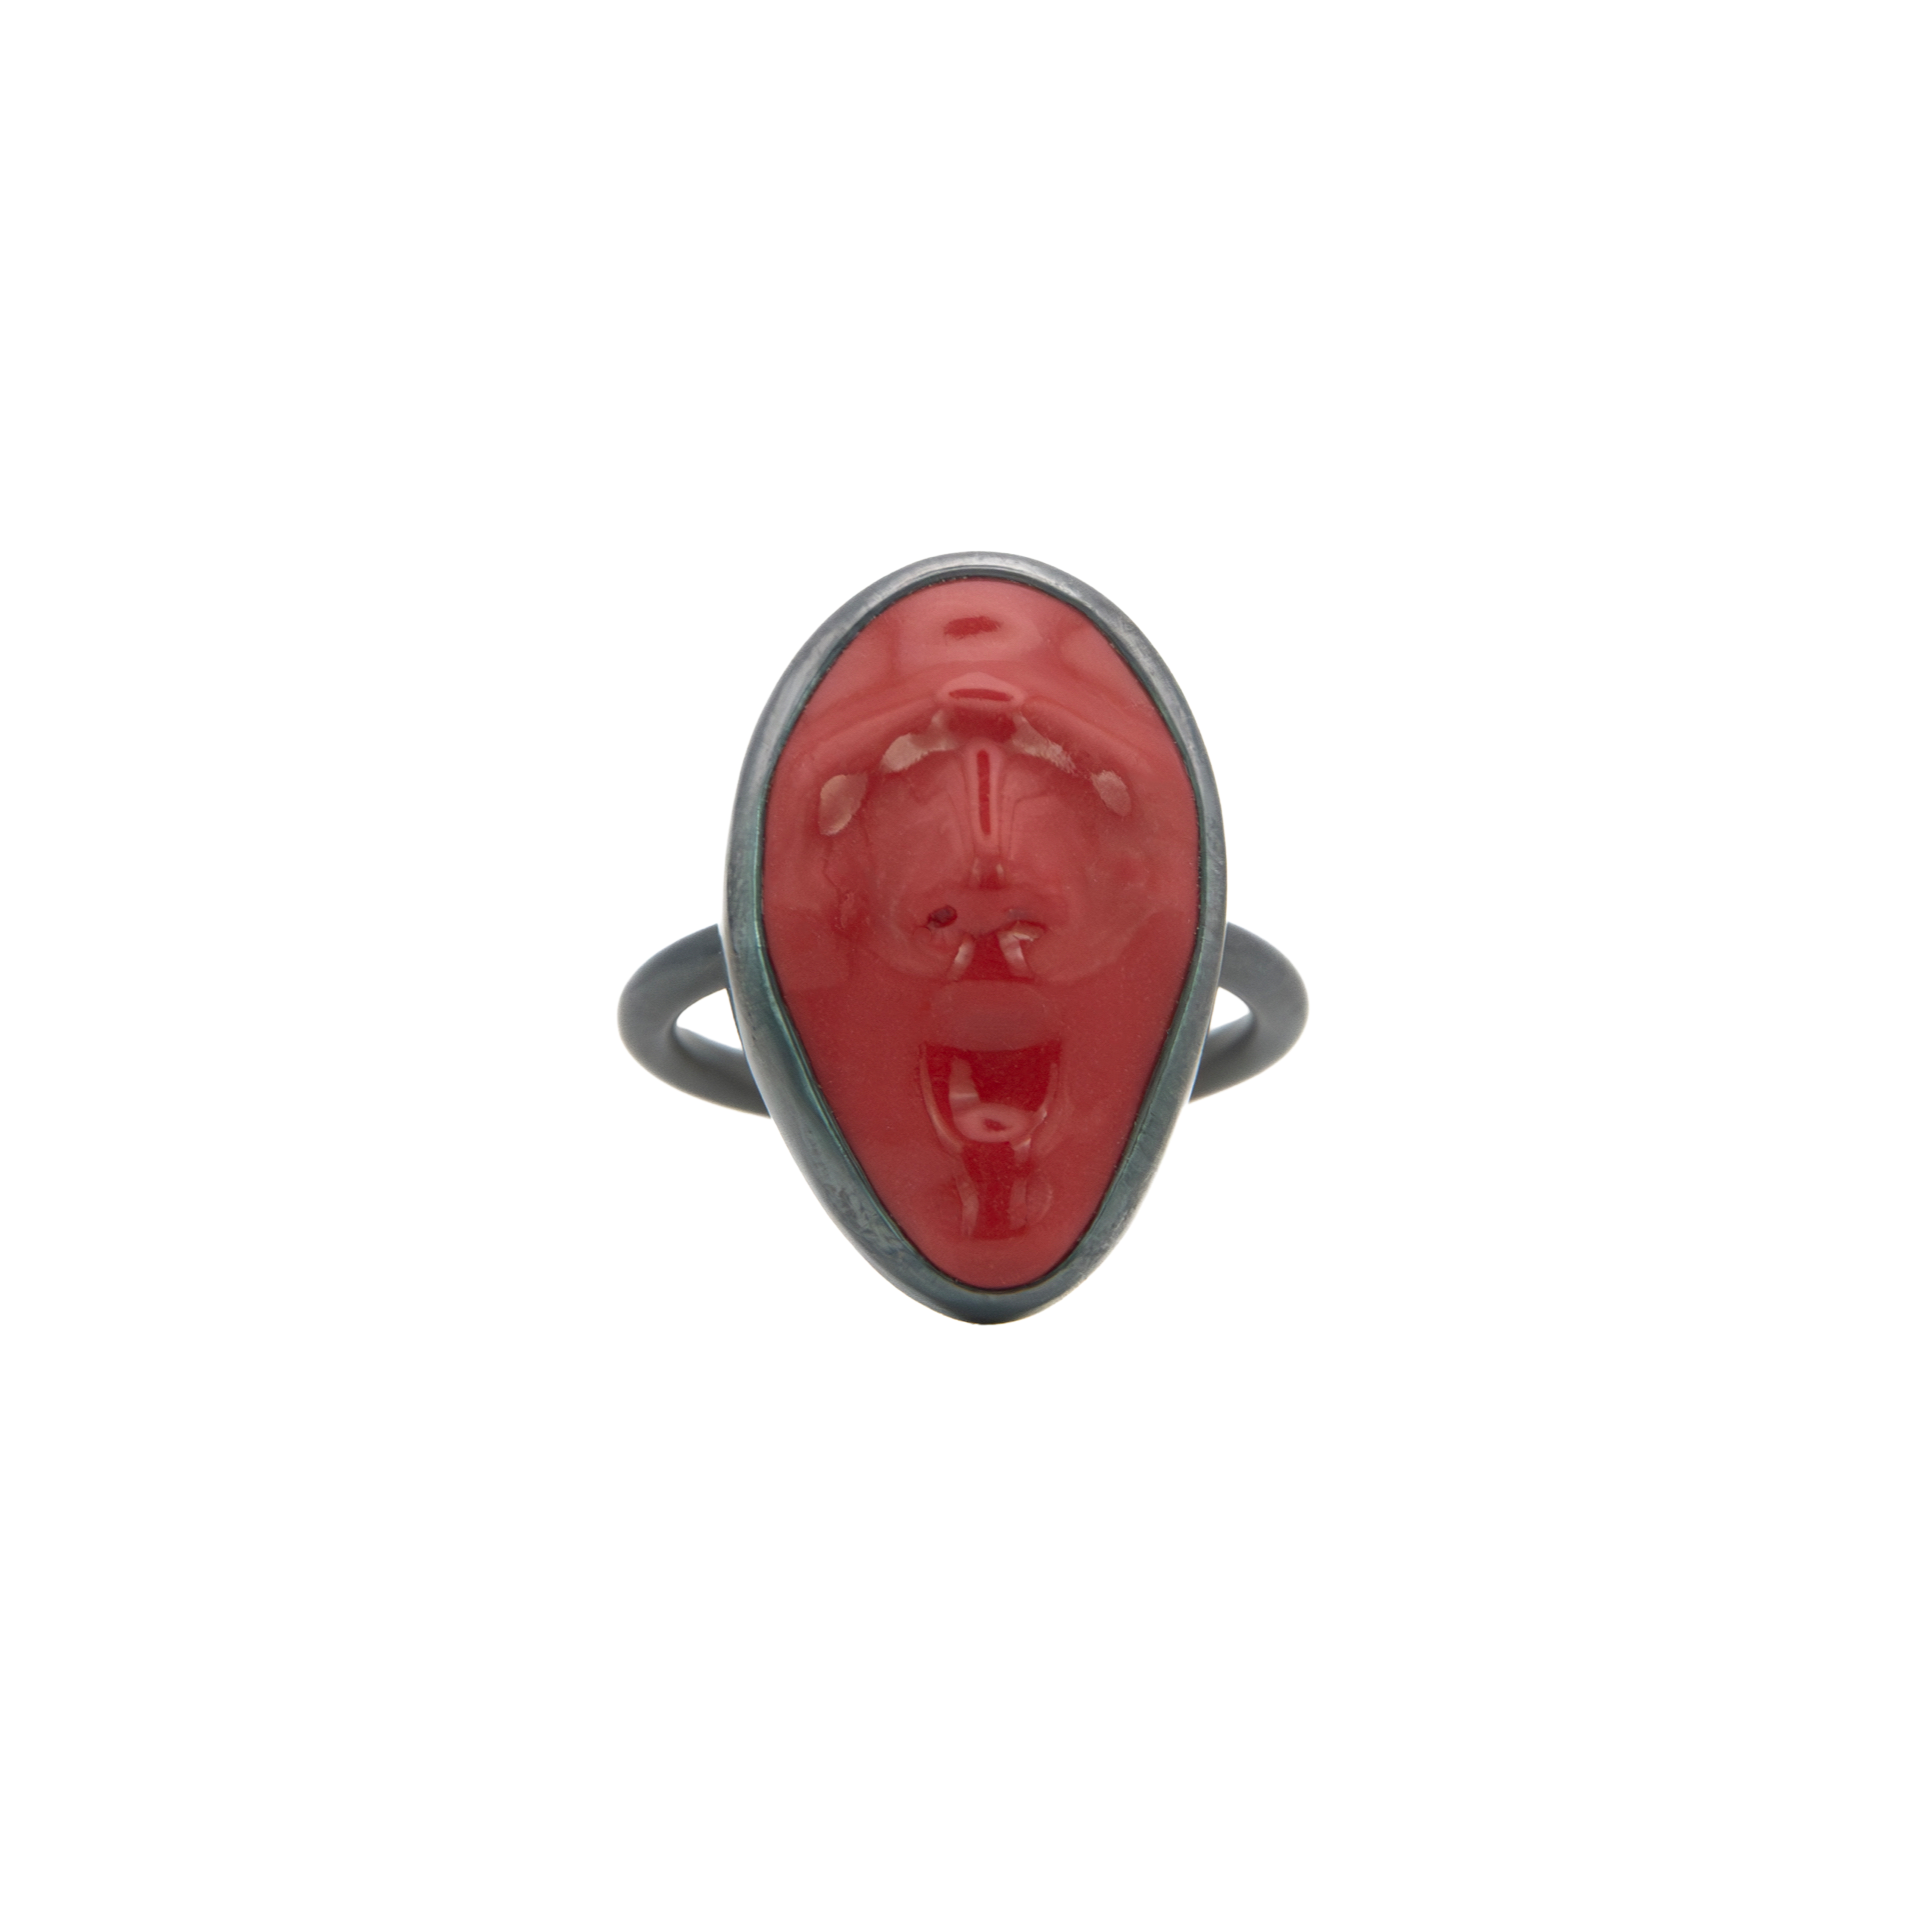 Caiyang Yin Social Mask Red Ring